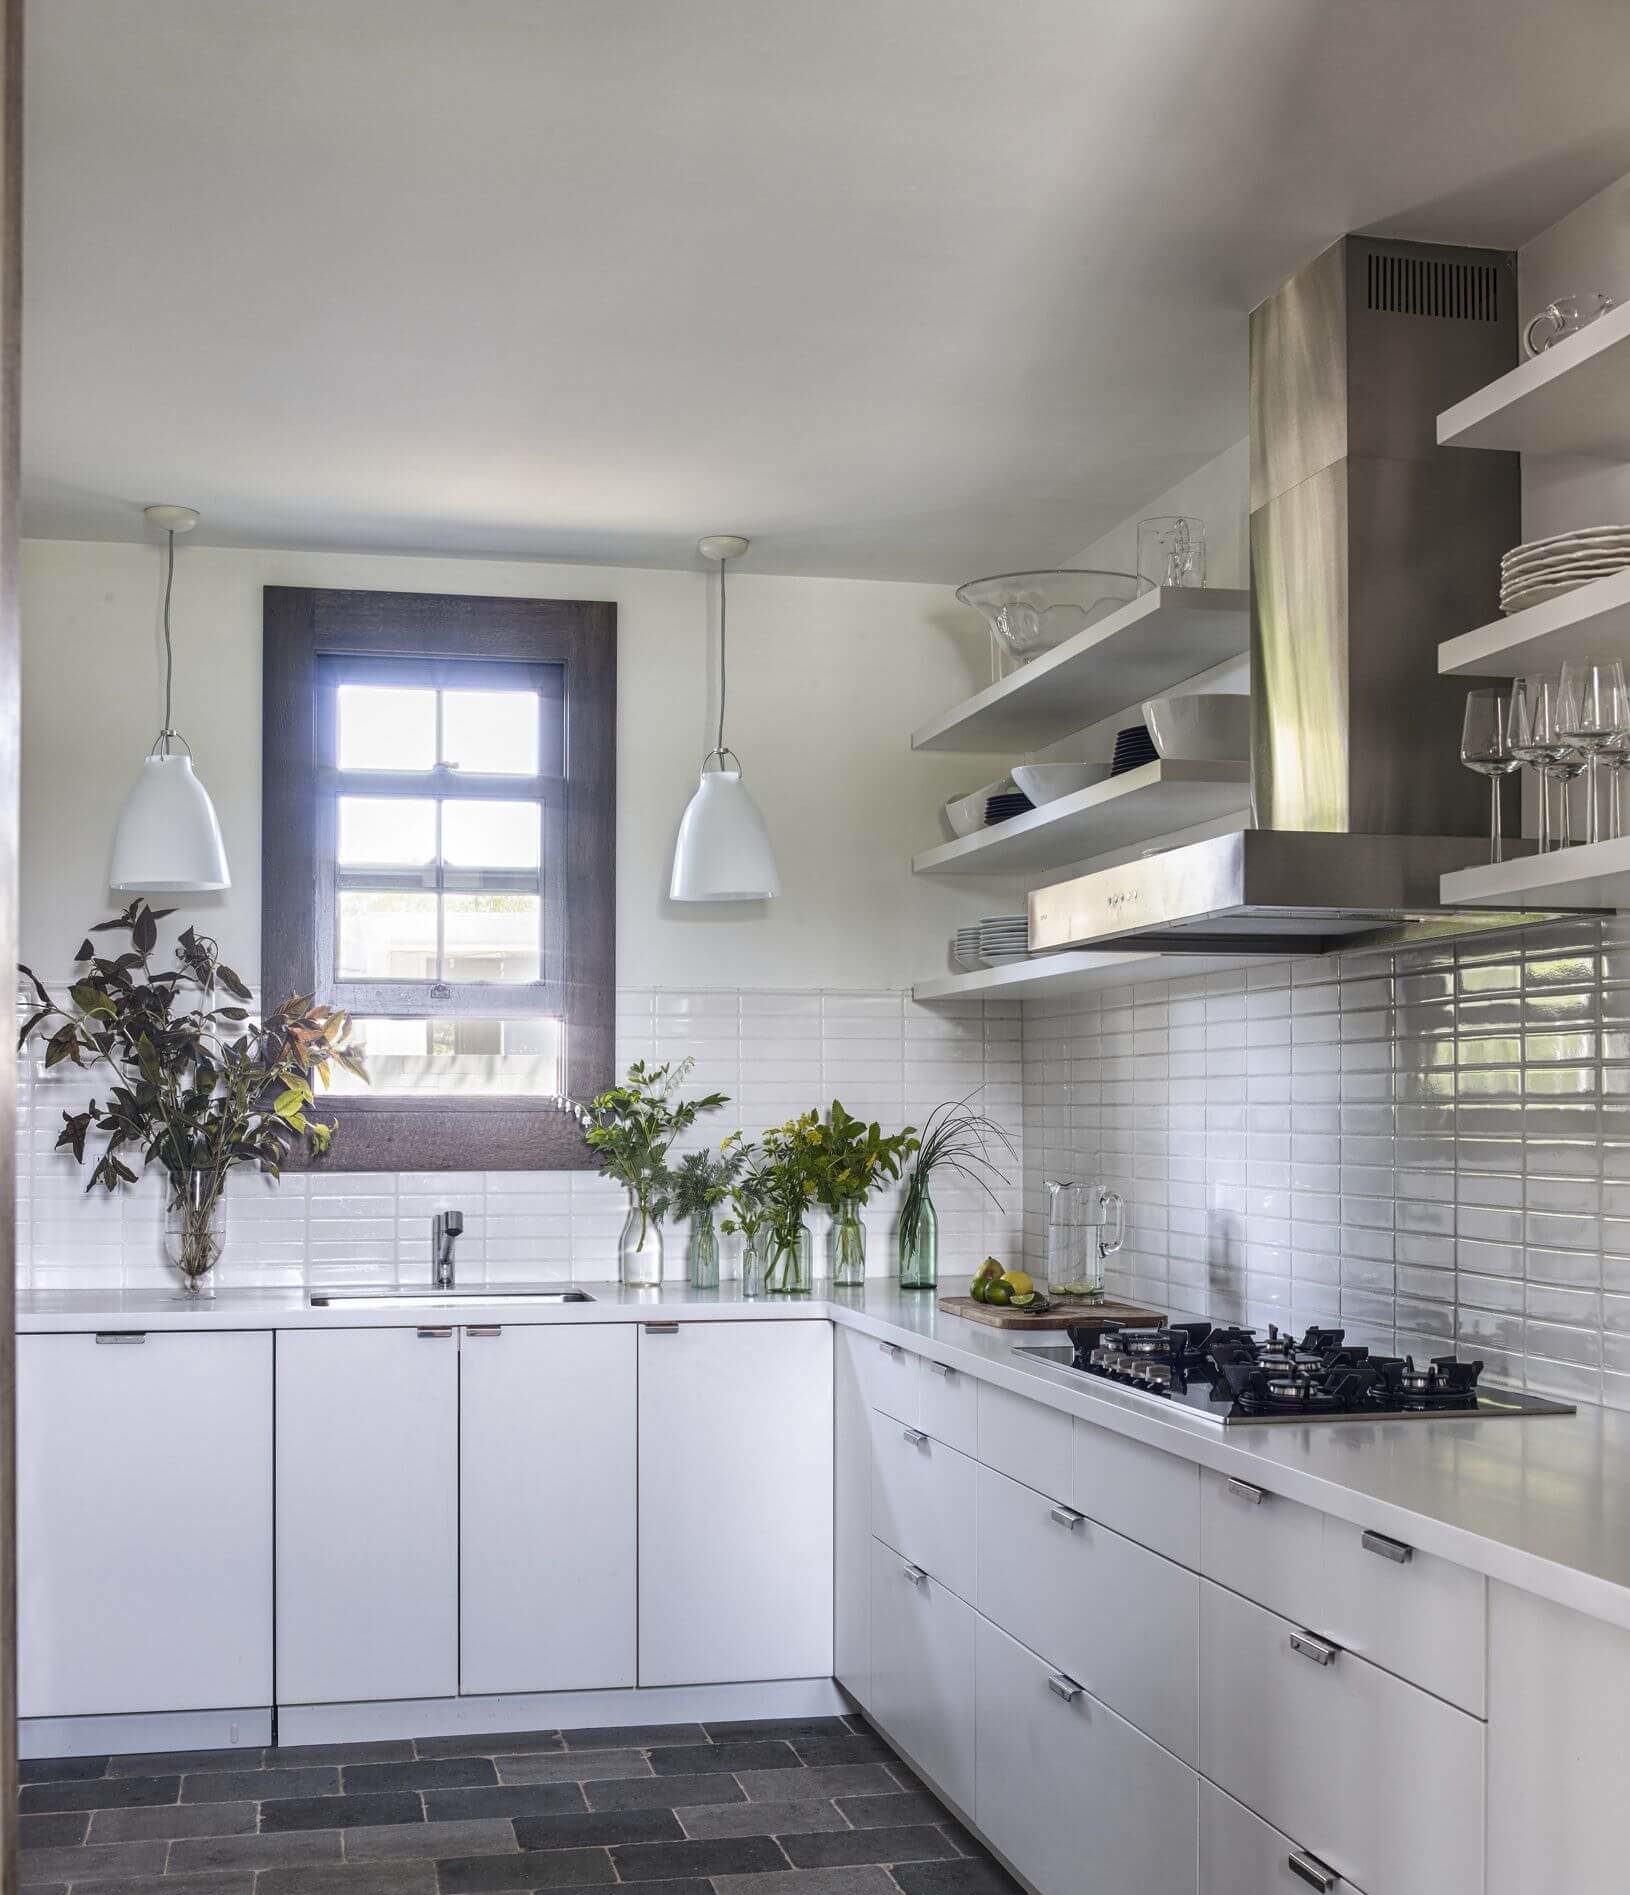 2.-minimalist-kitchen-design-e1545330994356.jpg